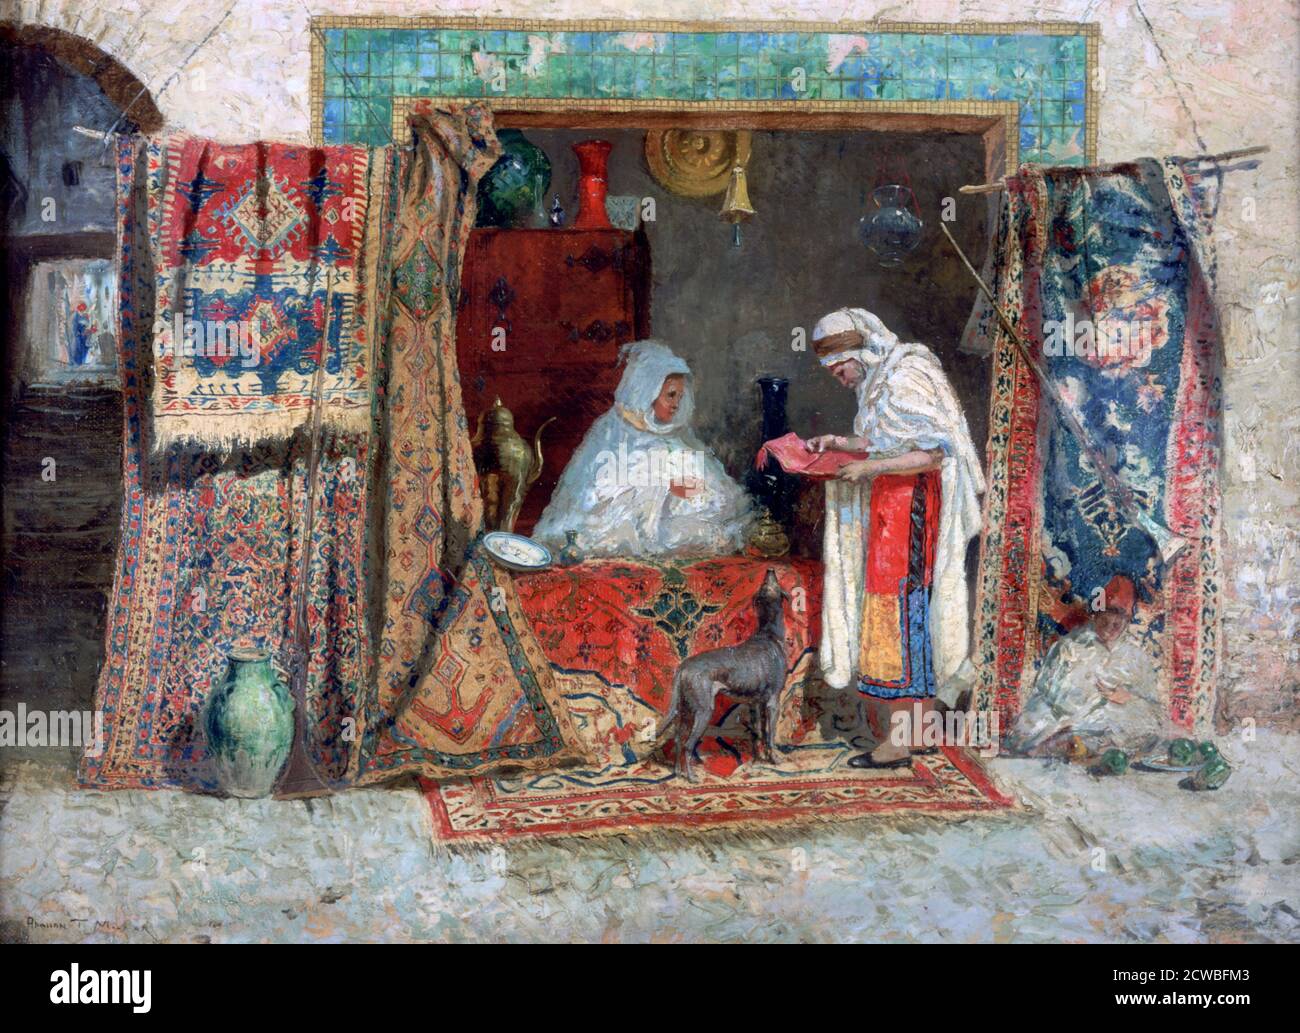 Tapis Merchant, c1870-1913. Artiste: Addison Thomas Millar. Addison Thomas Millar (1860-1913) est un peintre et artiste américain, connu pour ses scènes de genre et ses peintures orientalistes. Banque D'Images